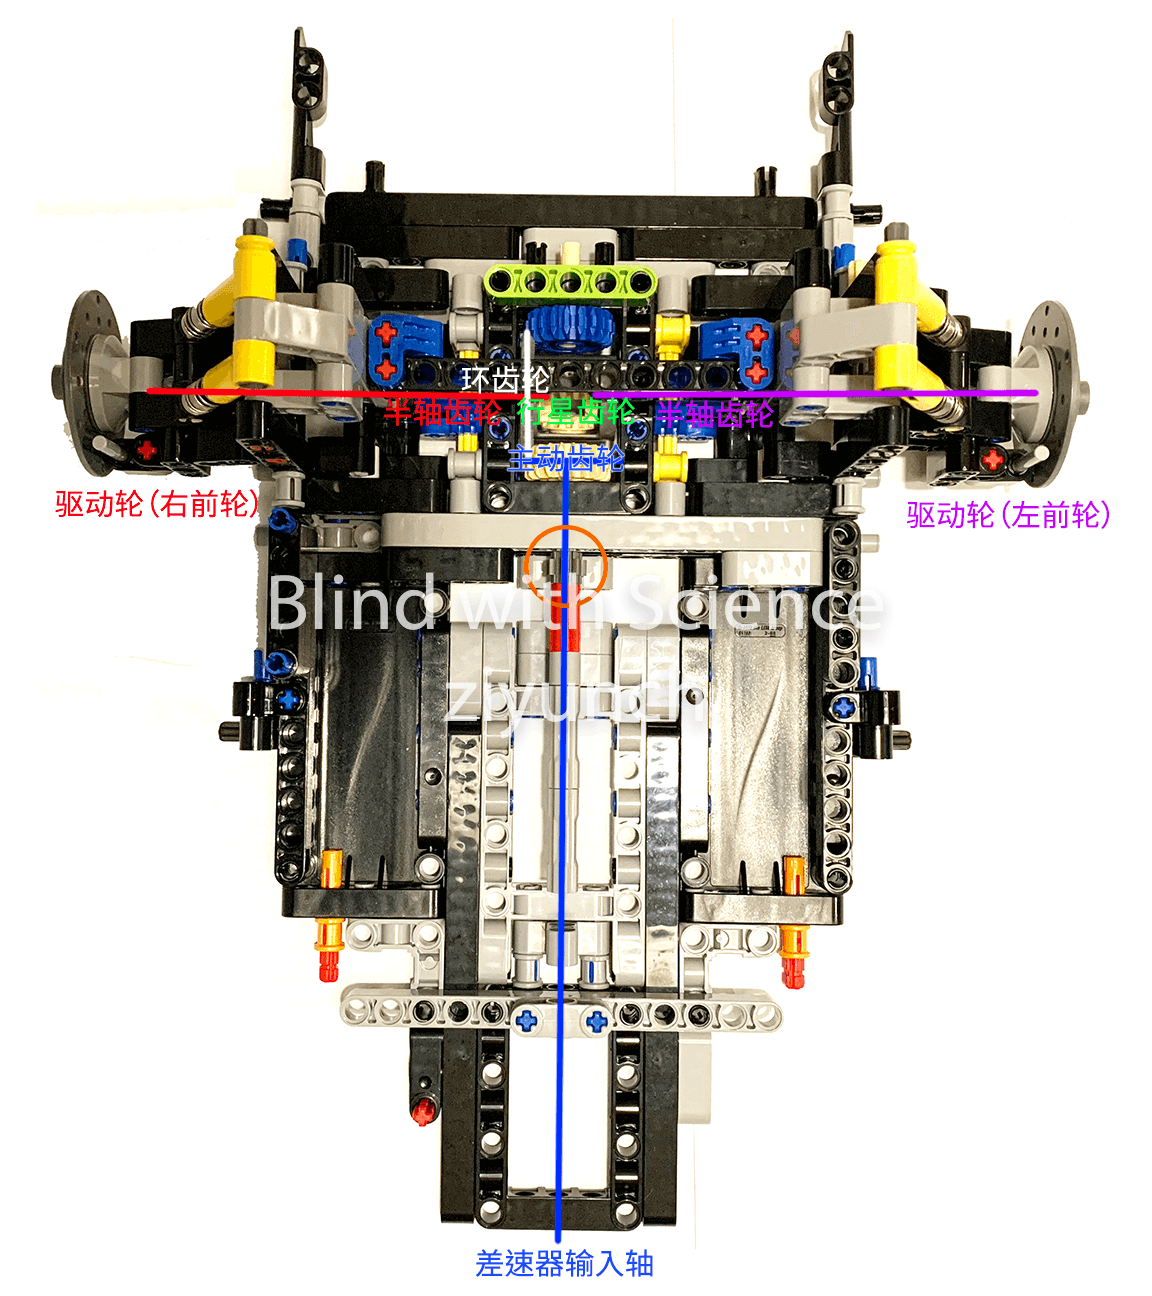 Figure 8: 后桥差速器